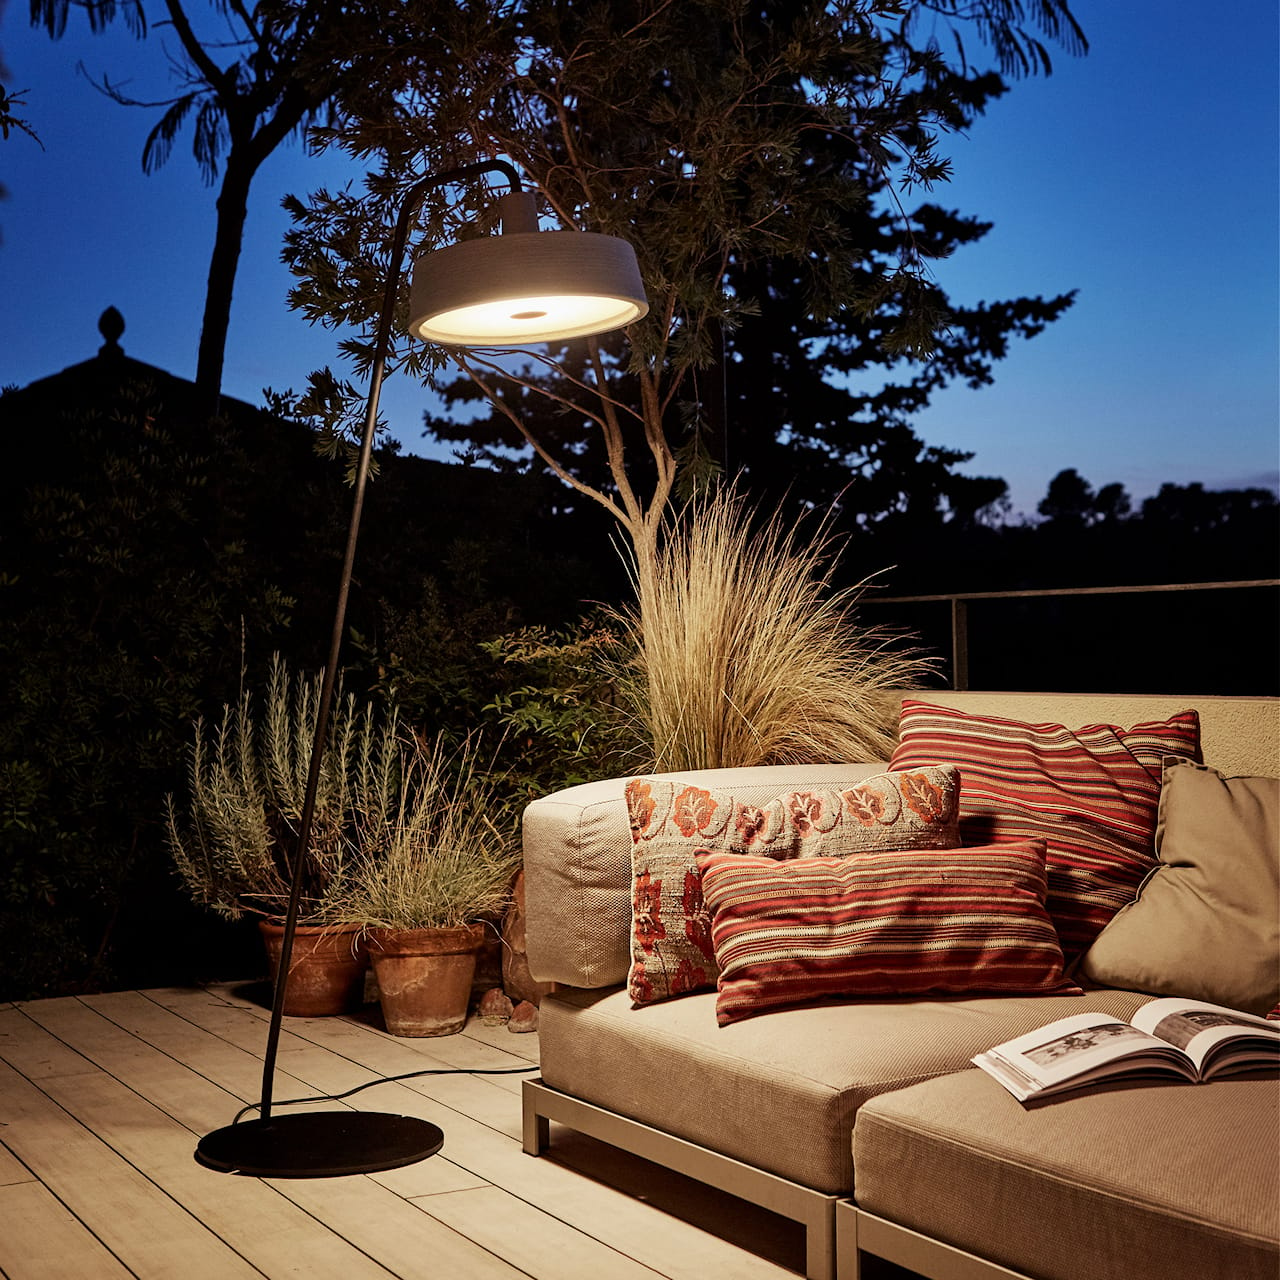 Soho 38 P Outdoor - Floor Lamp